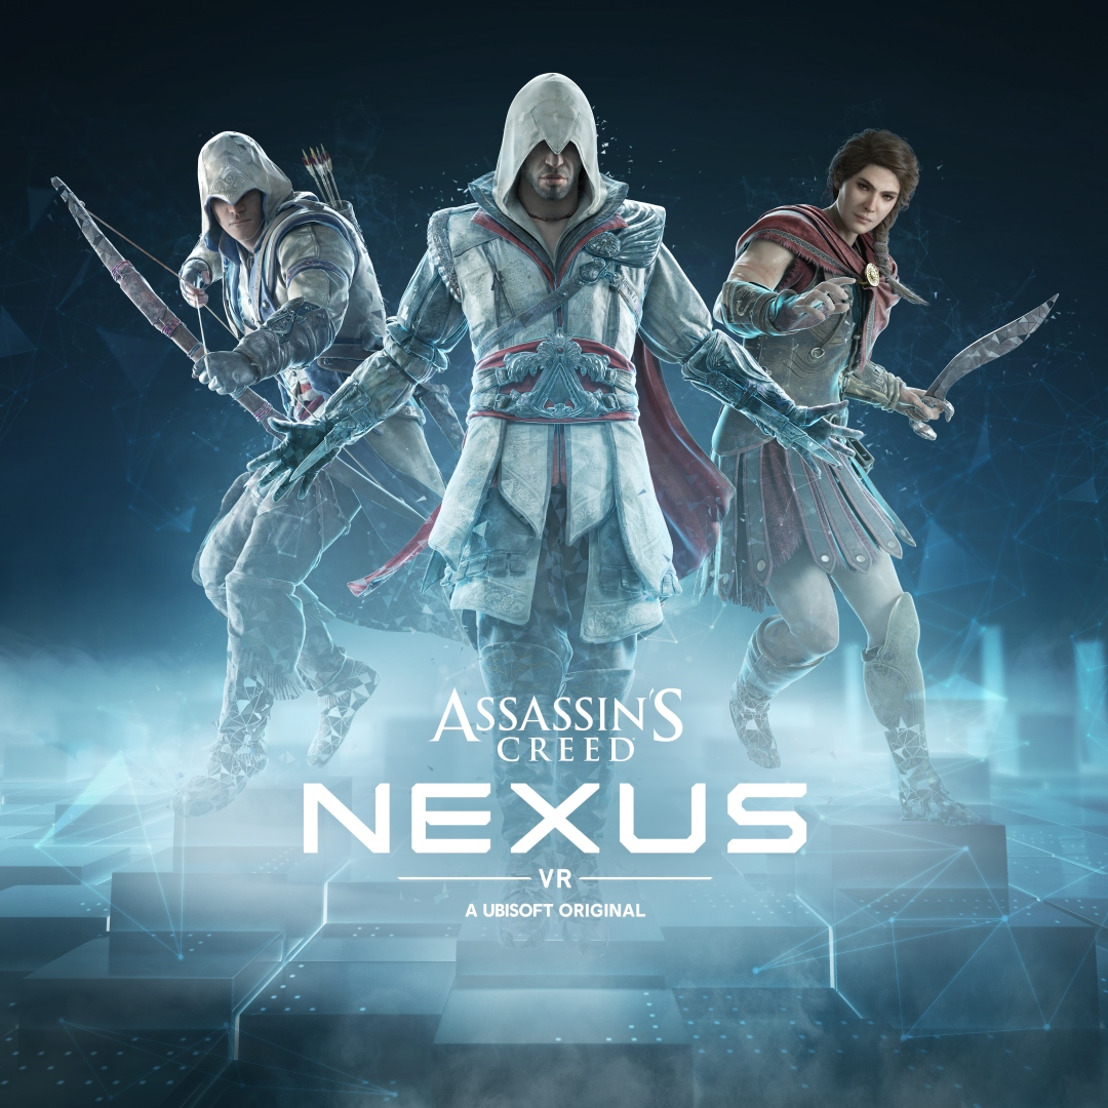 Assassin's Creed Nexus VR © Ubisoft